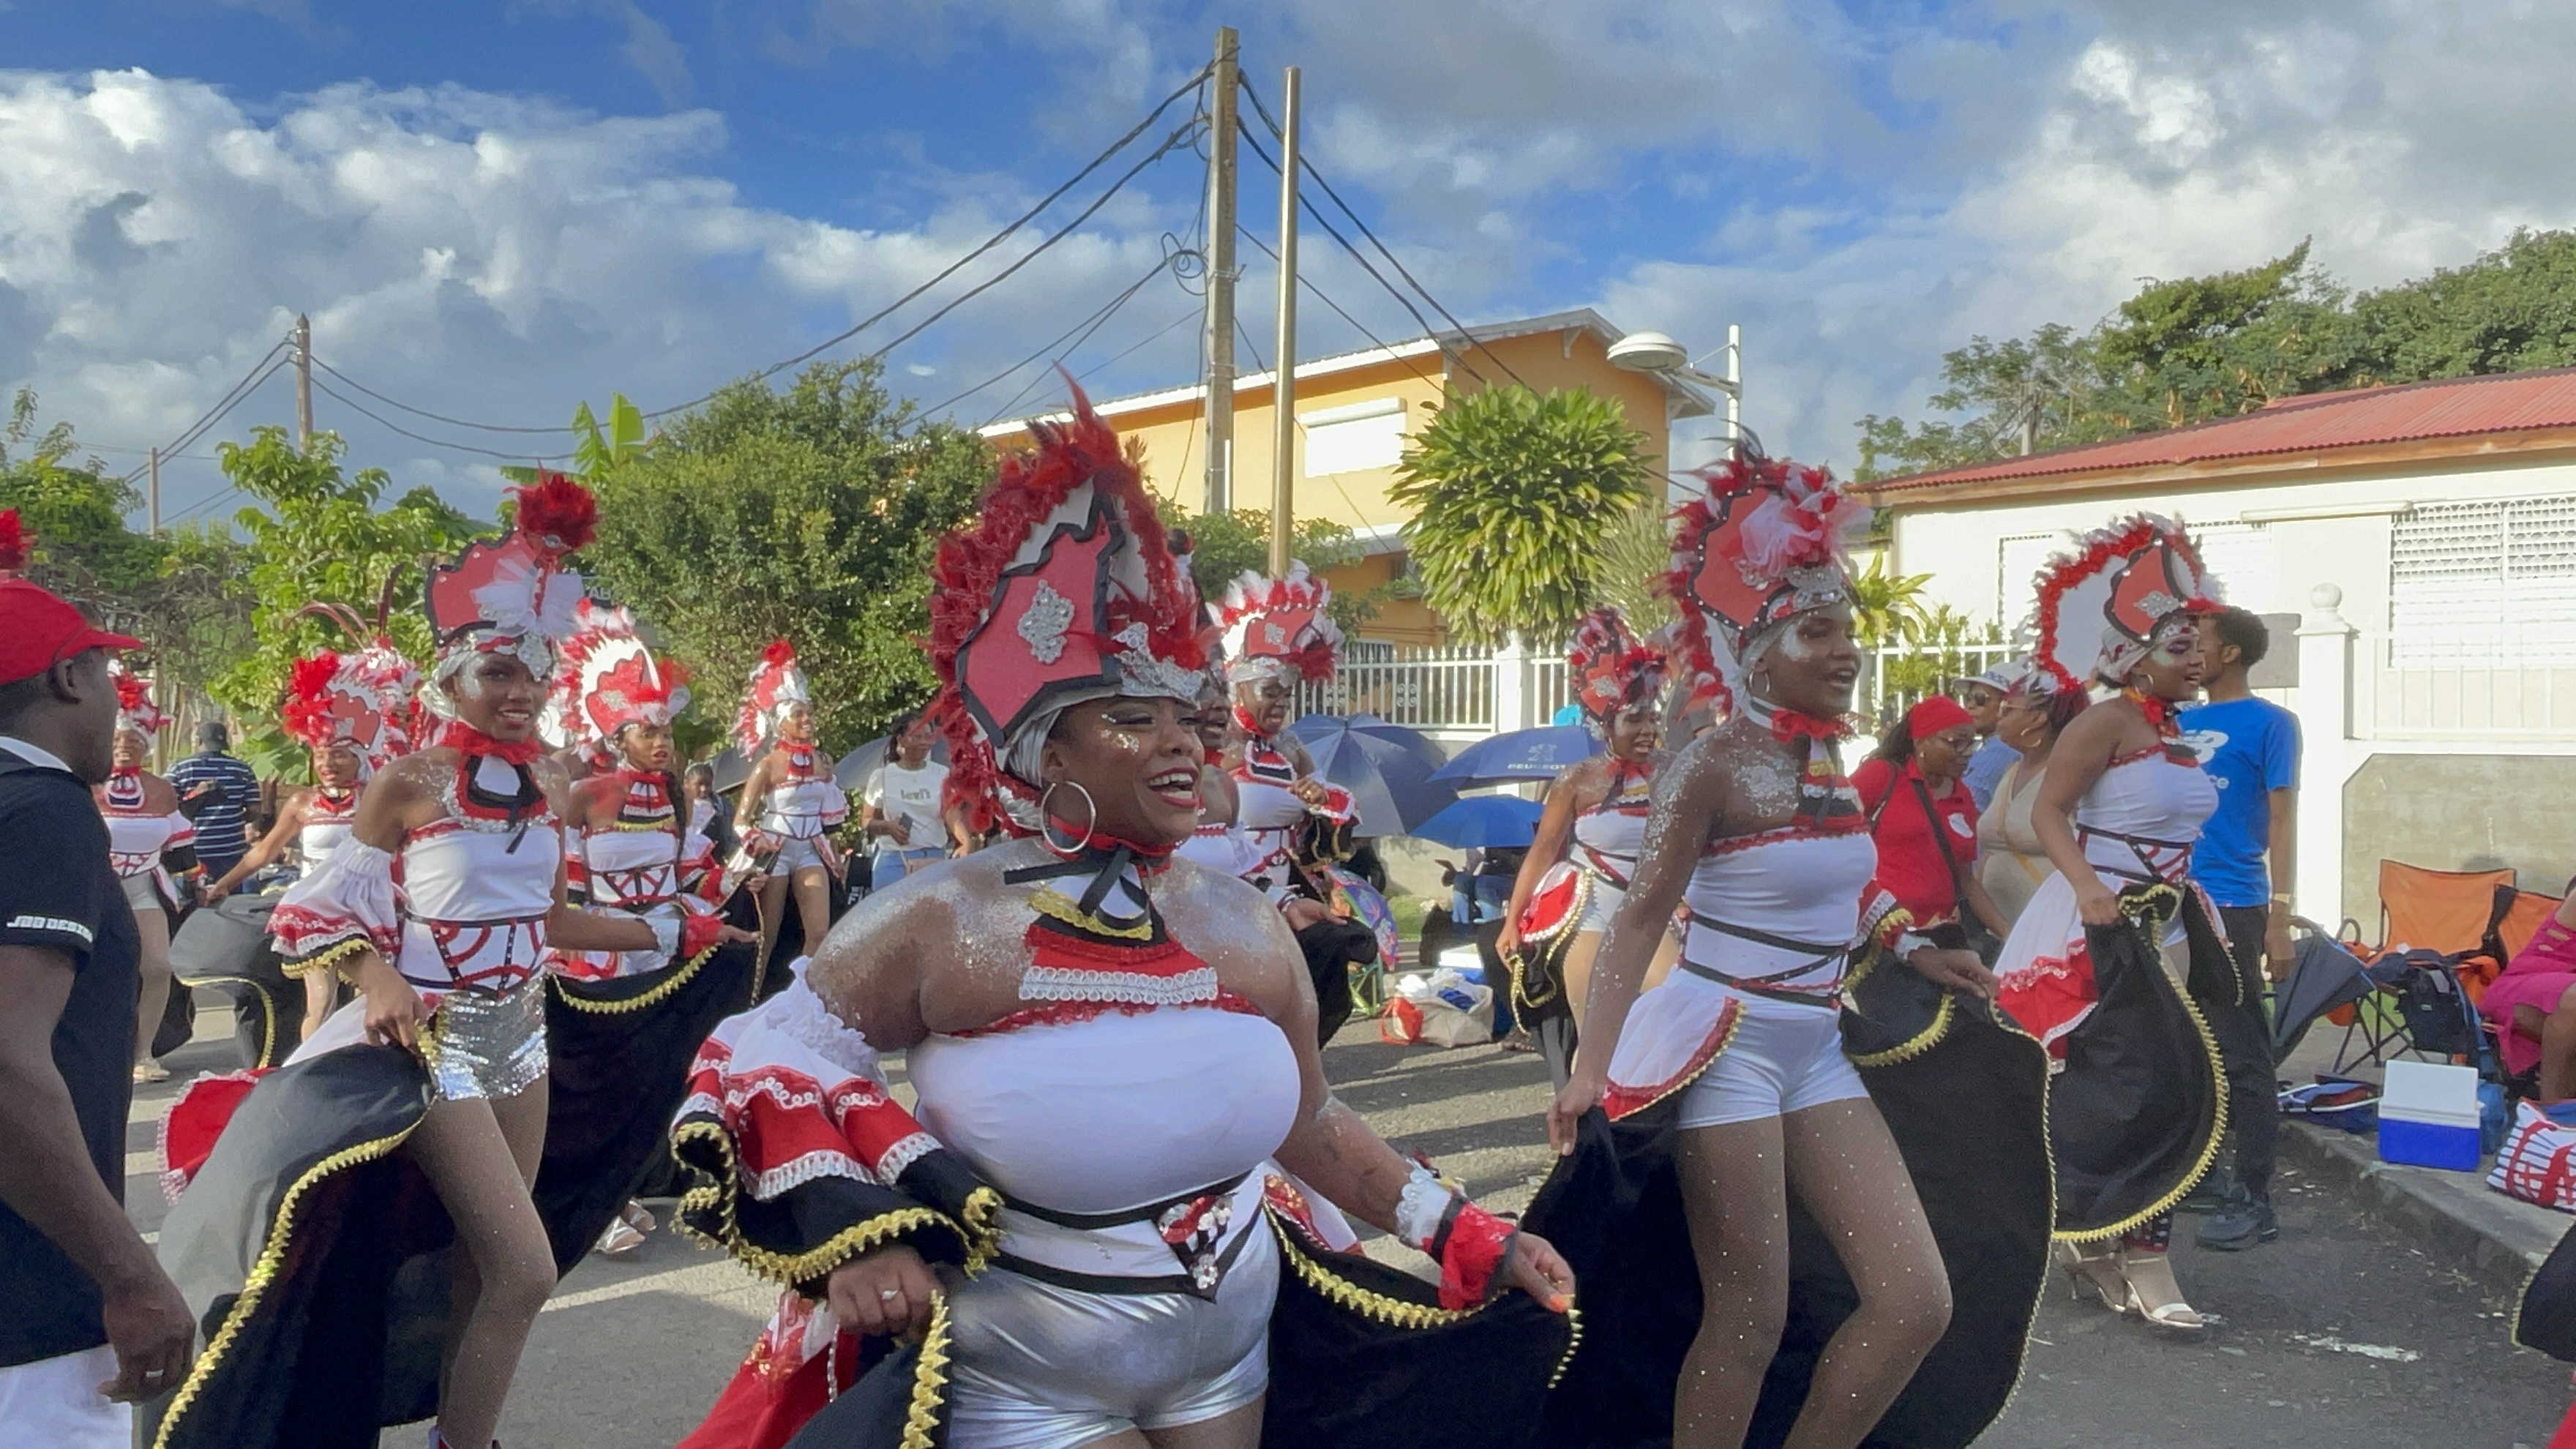     [En images] Doubout pou on gran vidé : il y avait foule au carnaval des Abymes

